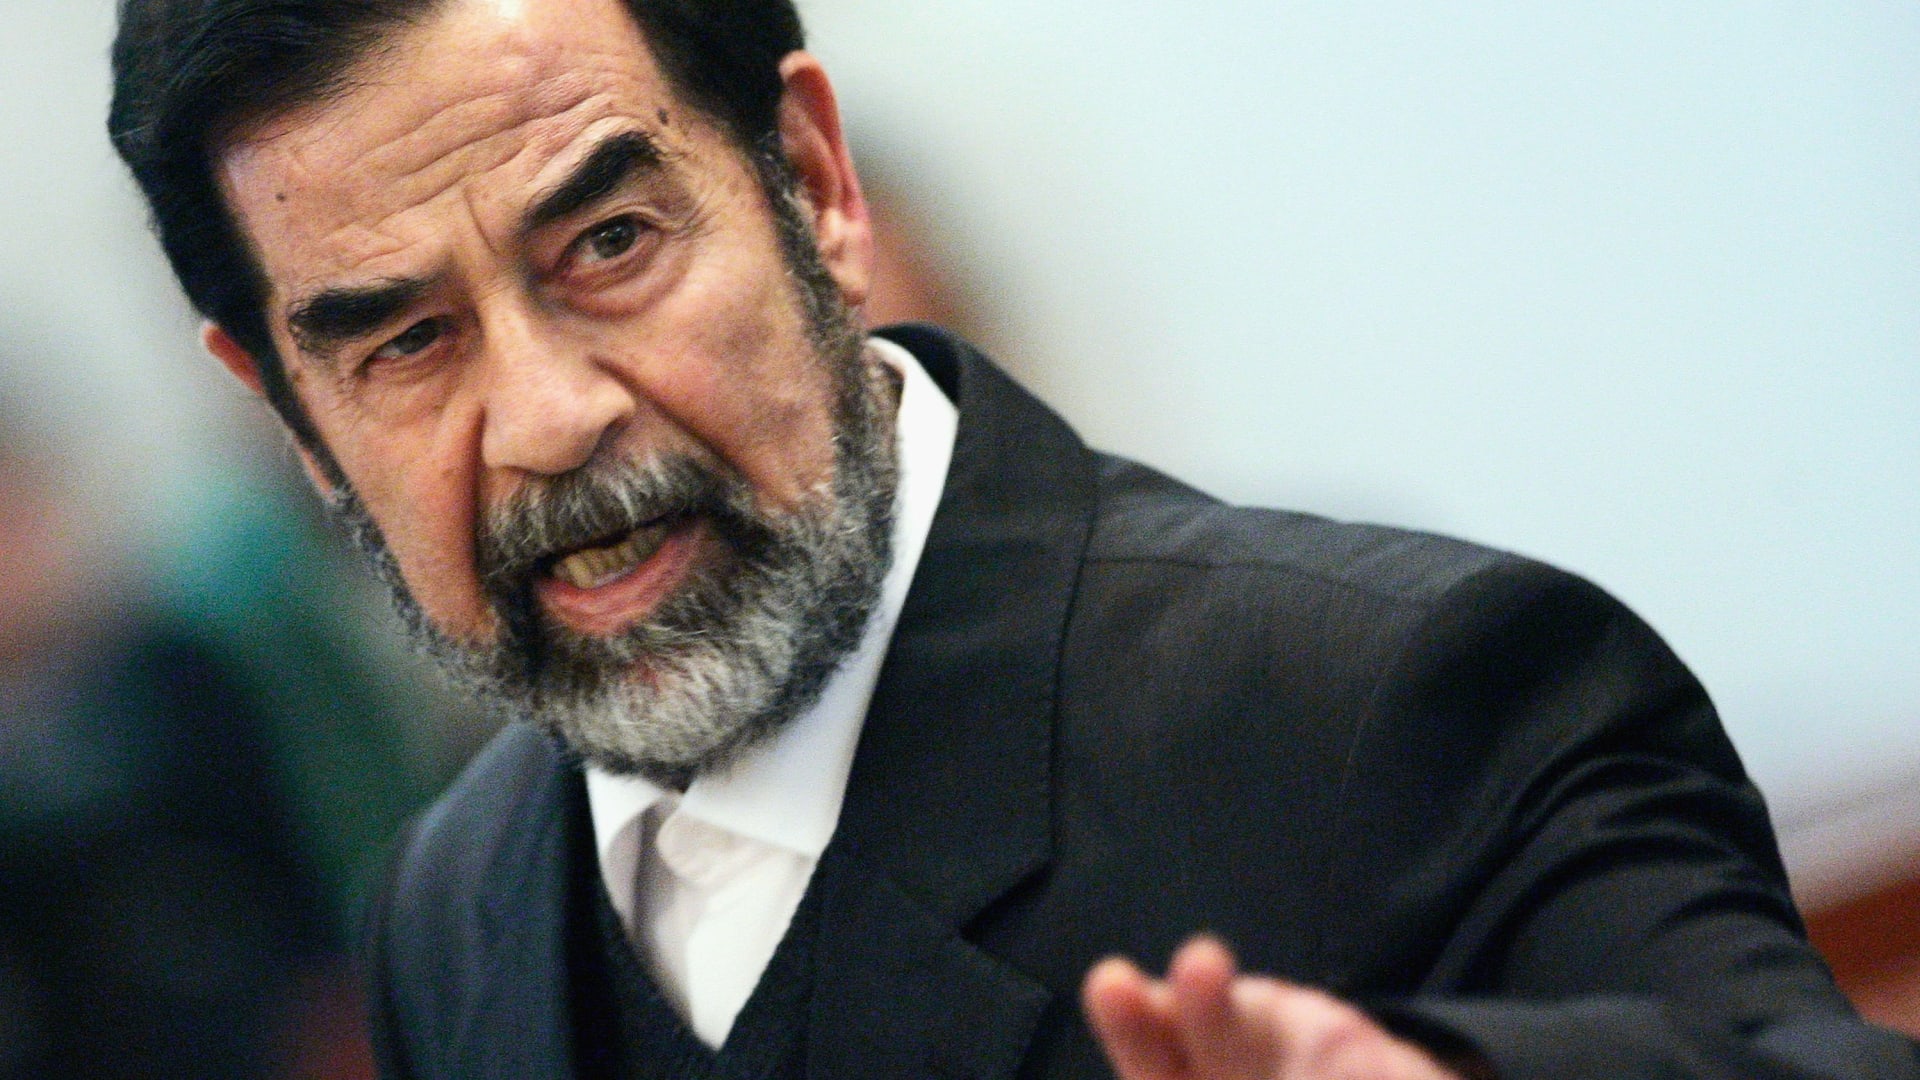 رئيس وزراء العراق السابق يروي تفاصيل ما حدث عندما رأى جثة صدام حسين قرب منزله